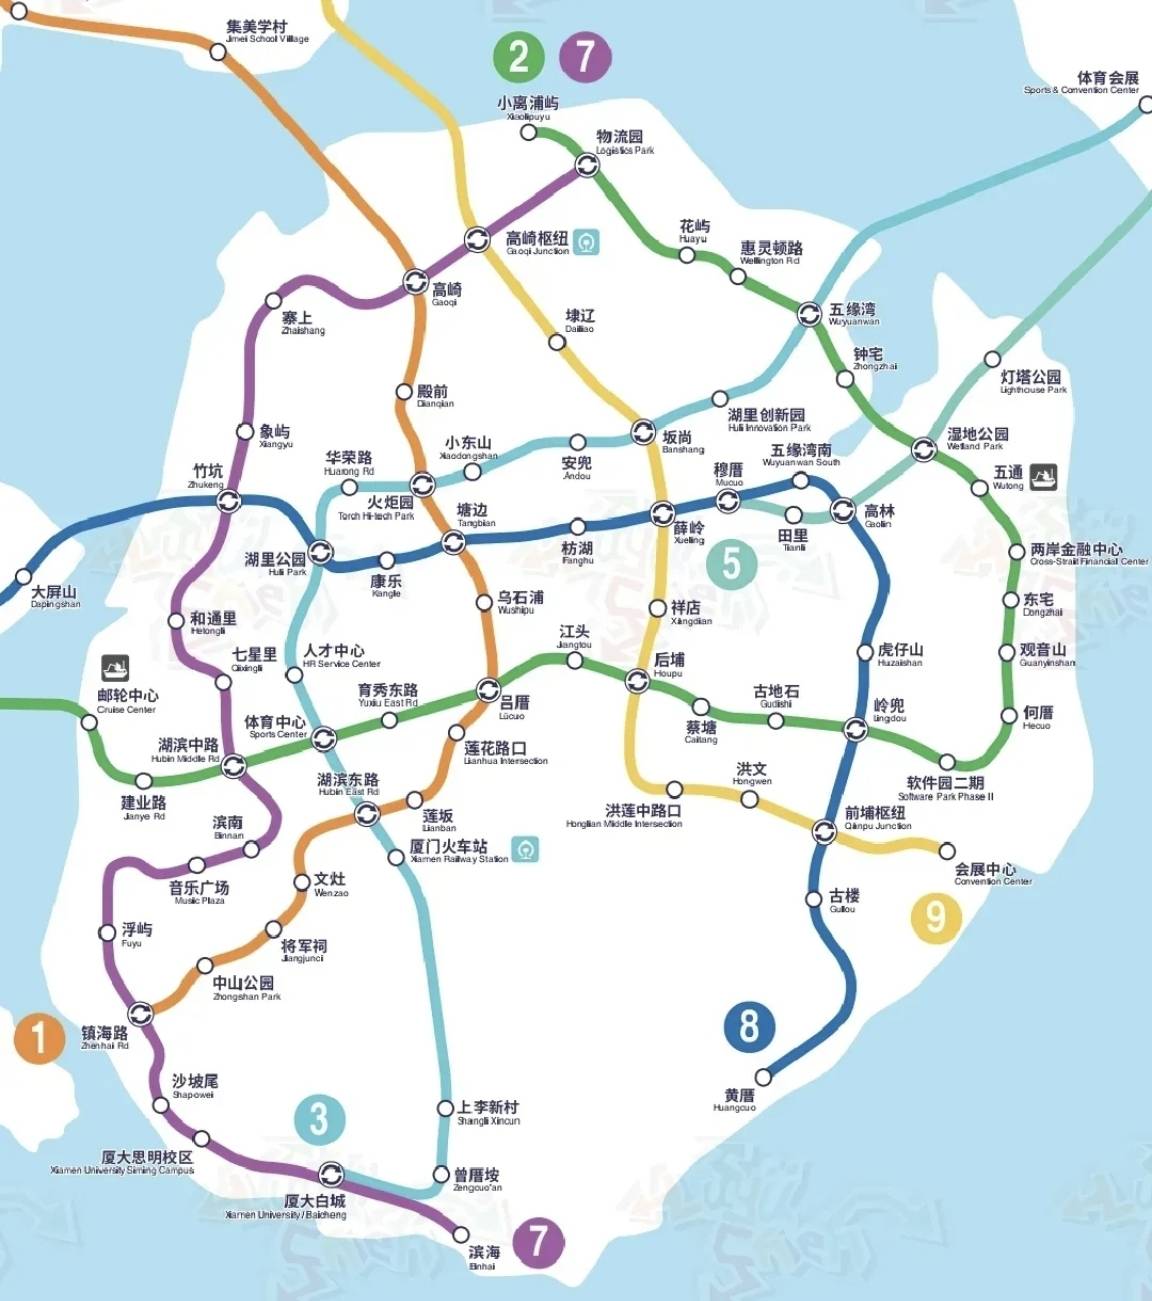 厦门地铁8号线新规划走向与此前规划大相径庭长30公里设21个站